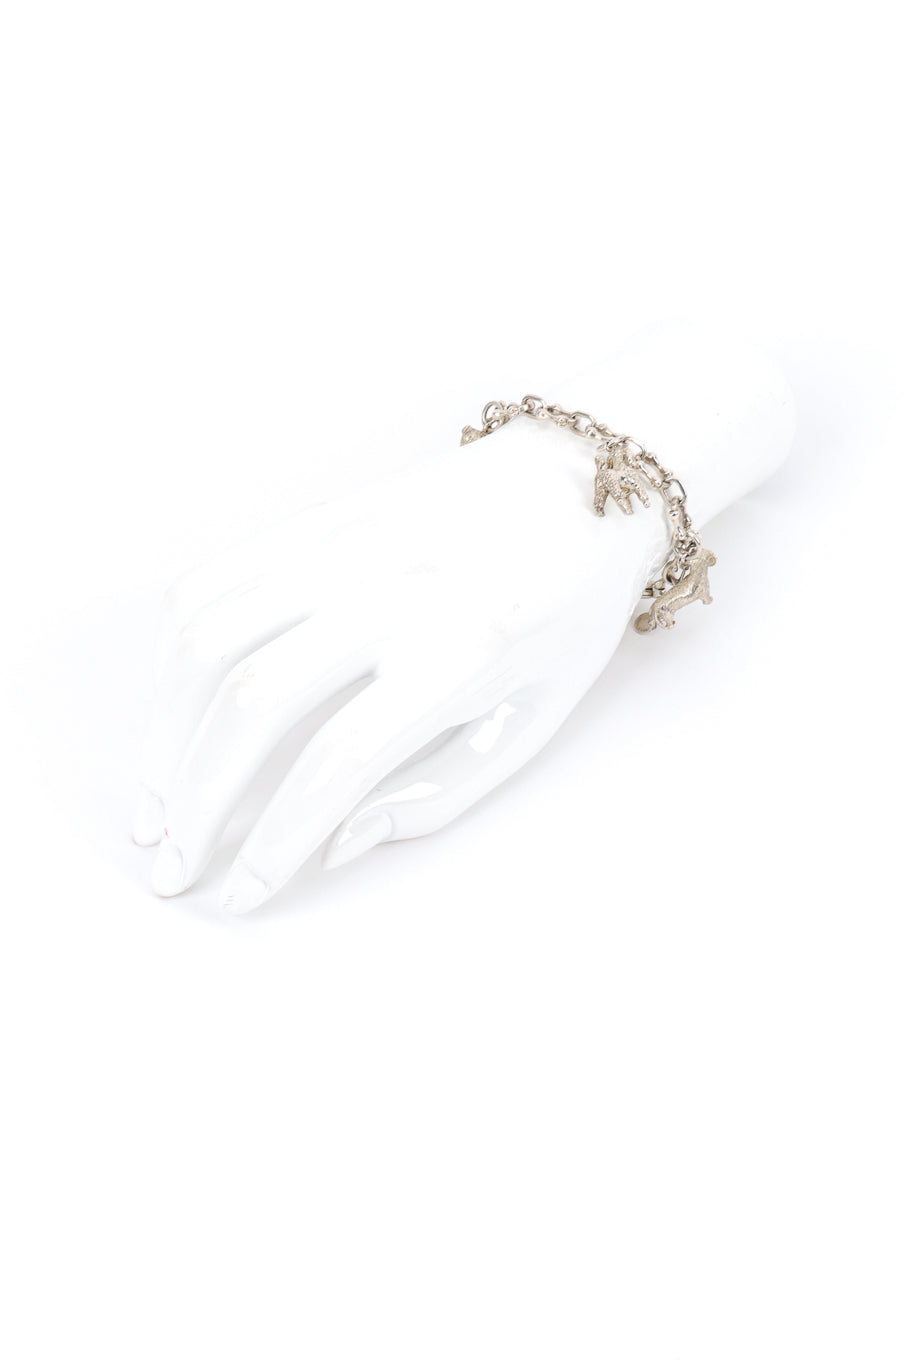 Vintage Tiffany & Co. Sterling Dog Charm Bracelet on mannequin hand @recess la